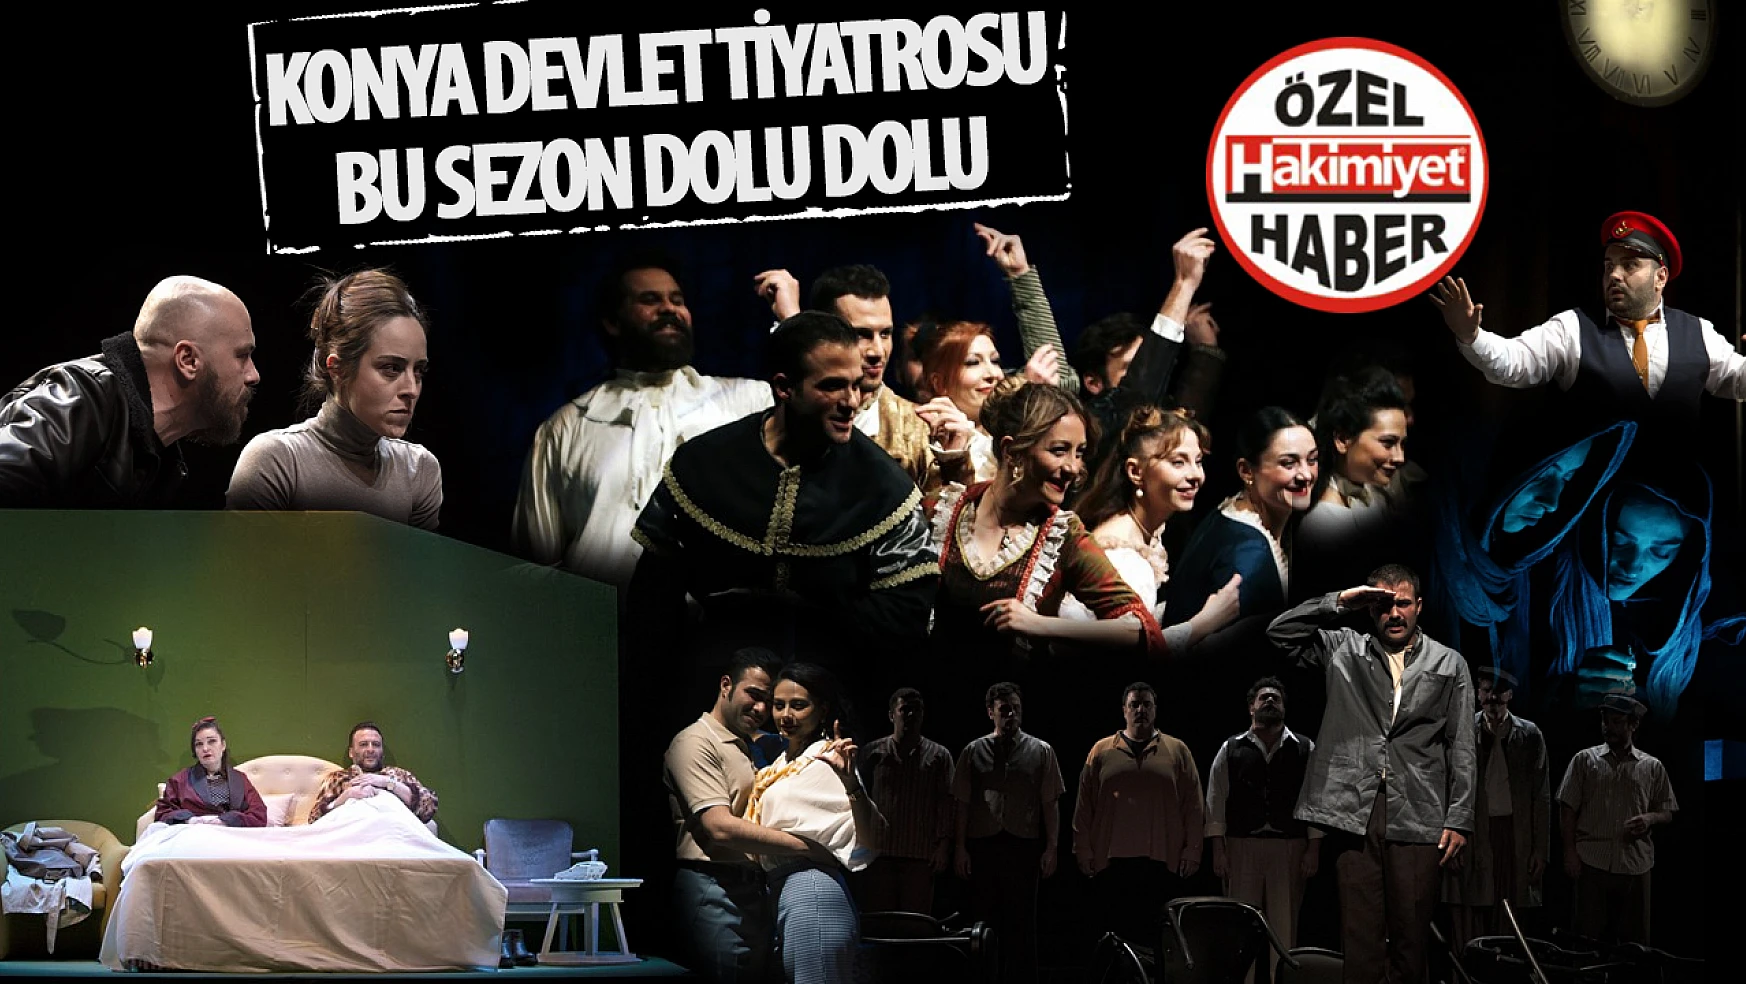 Konya Devlet Tiyatrosu'nda Dolu Dolu Bir Sezon Sanatseverleri Bekliyor